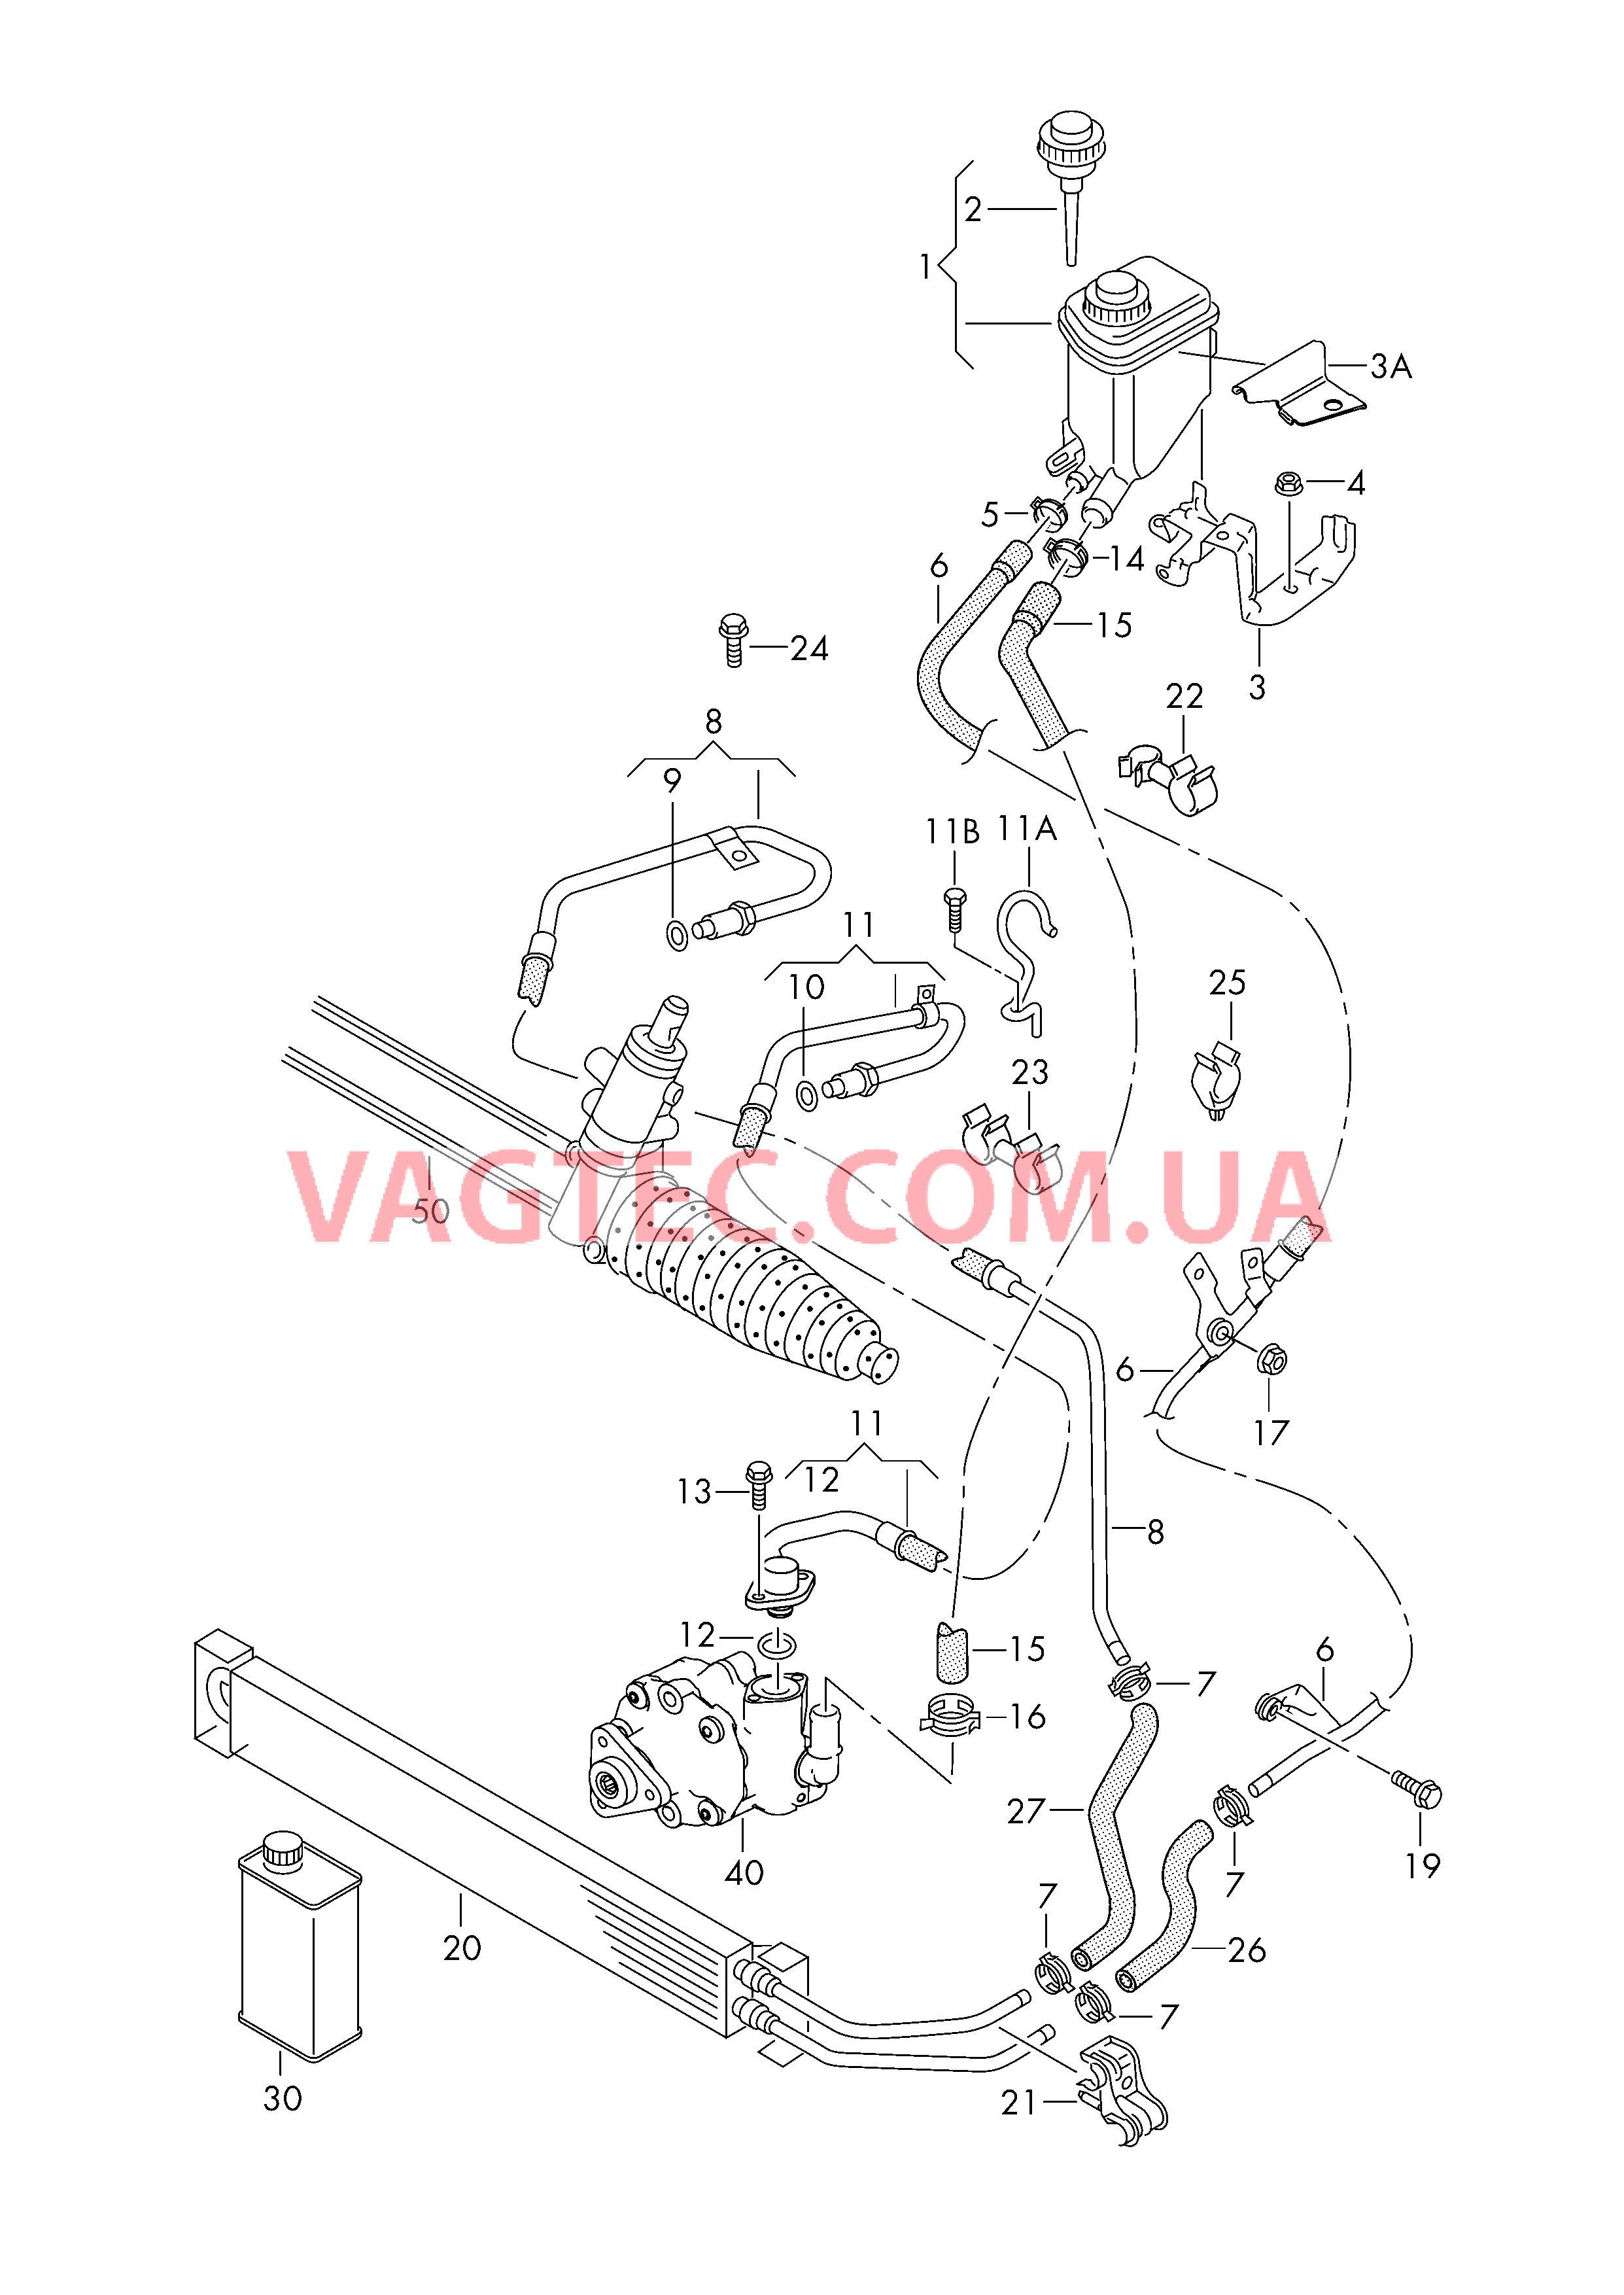 Масляный бачок с соединительными деталями, шлангами  для ГУРа  для VOLKSWAGEN Touareg 2017